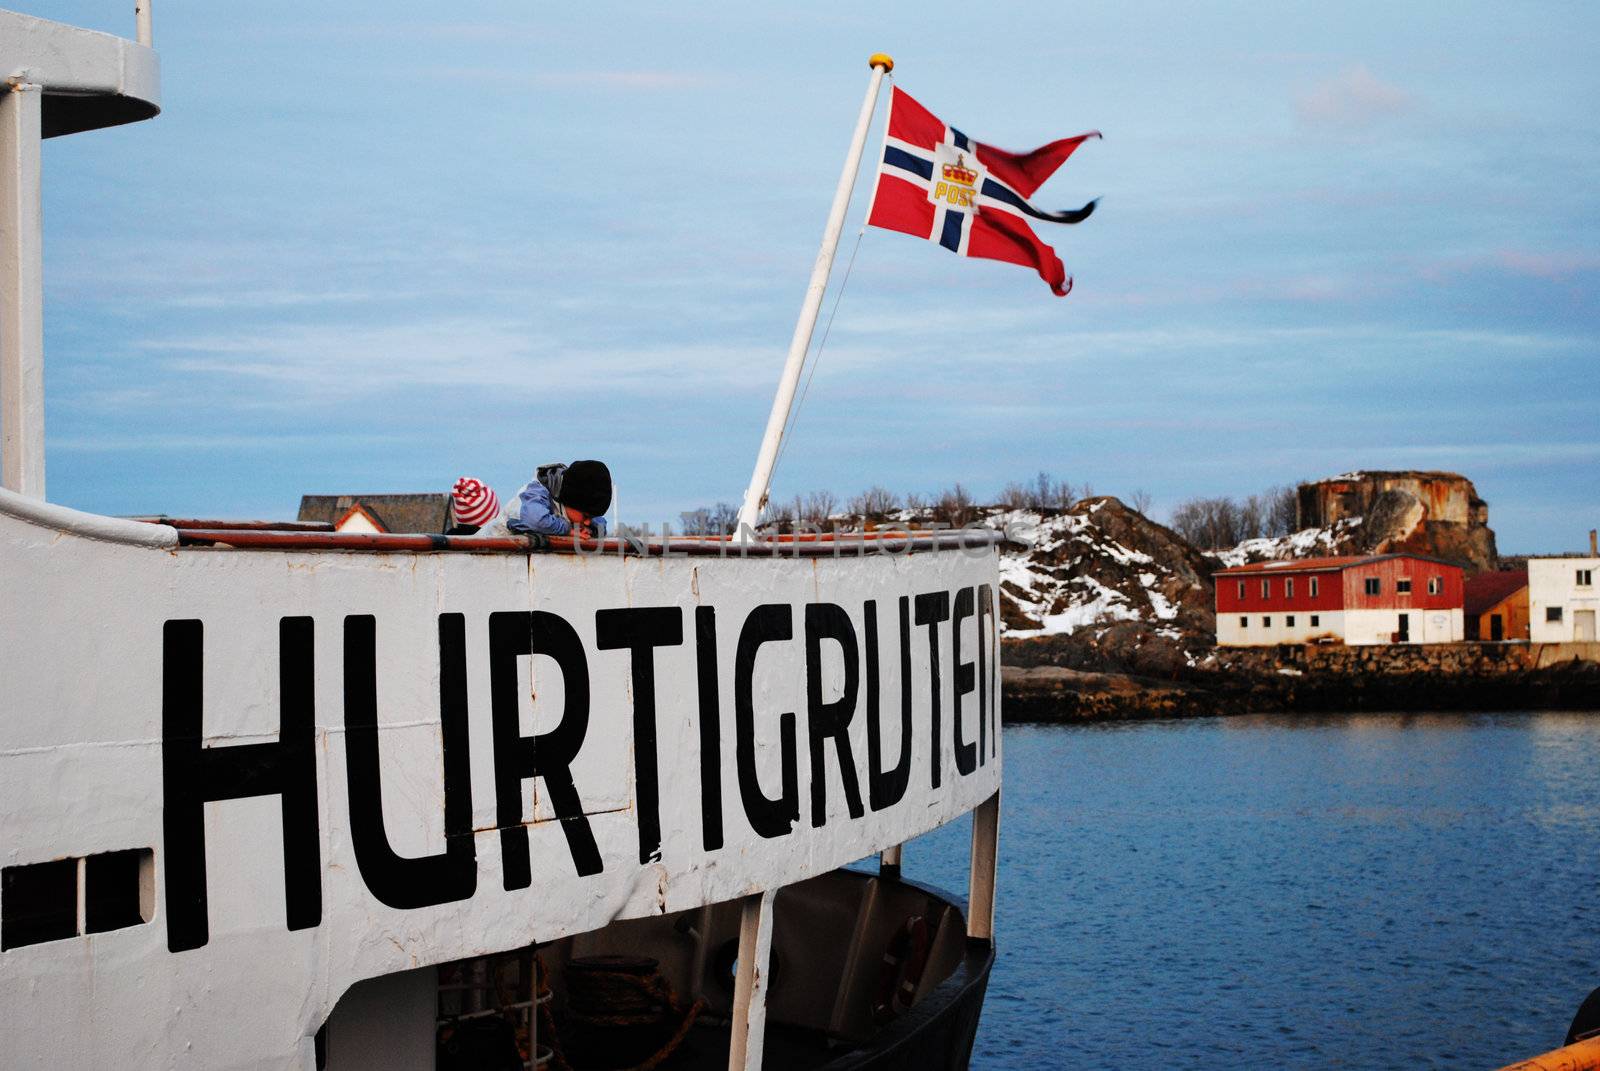 The norwegian coastal steamer Hurtigruta.